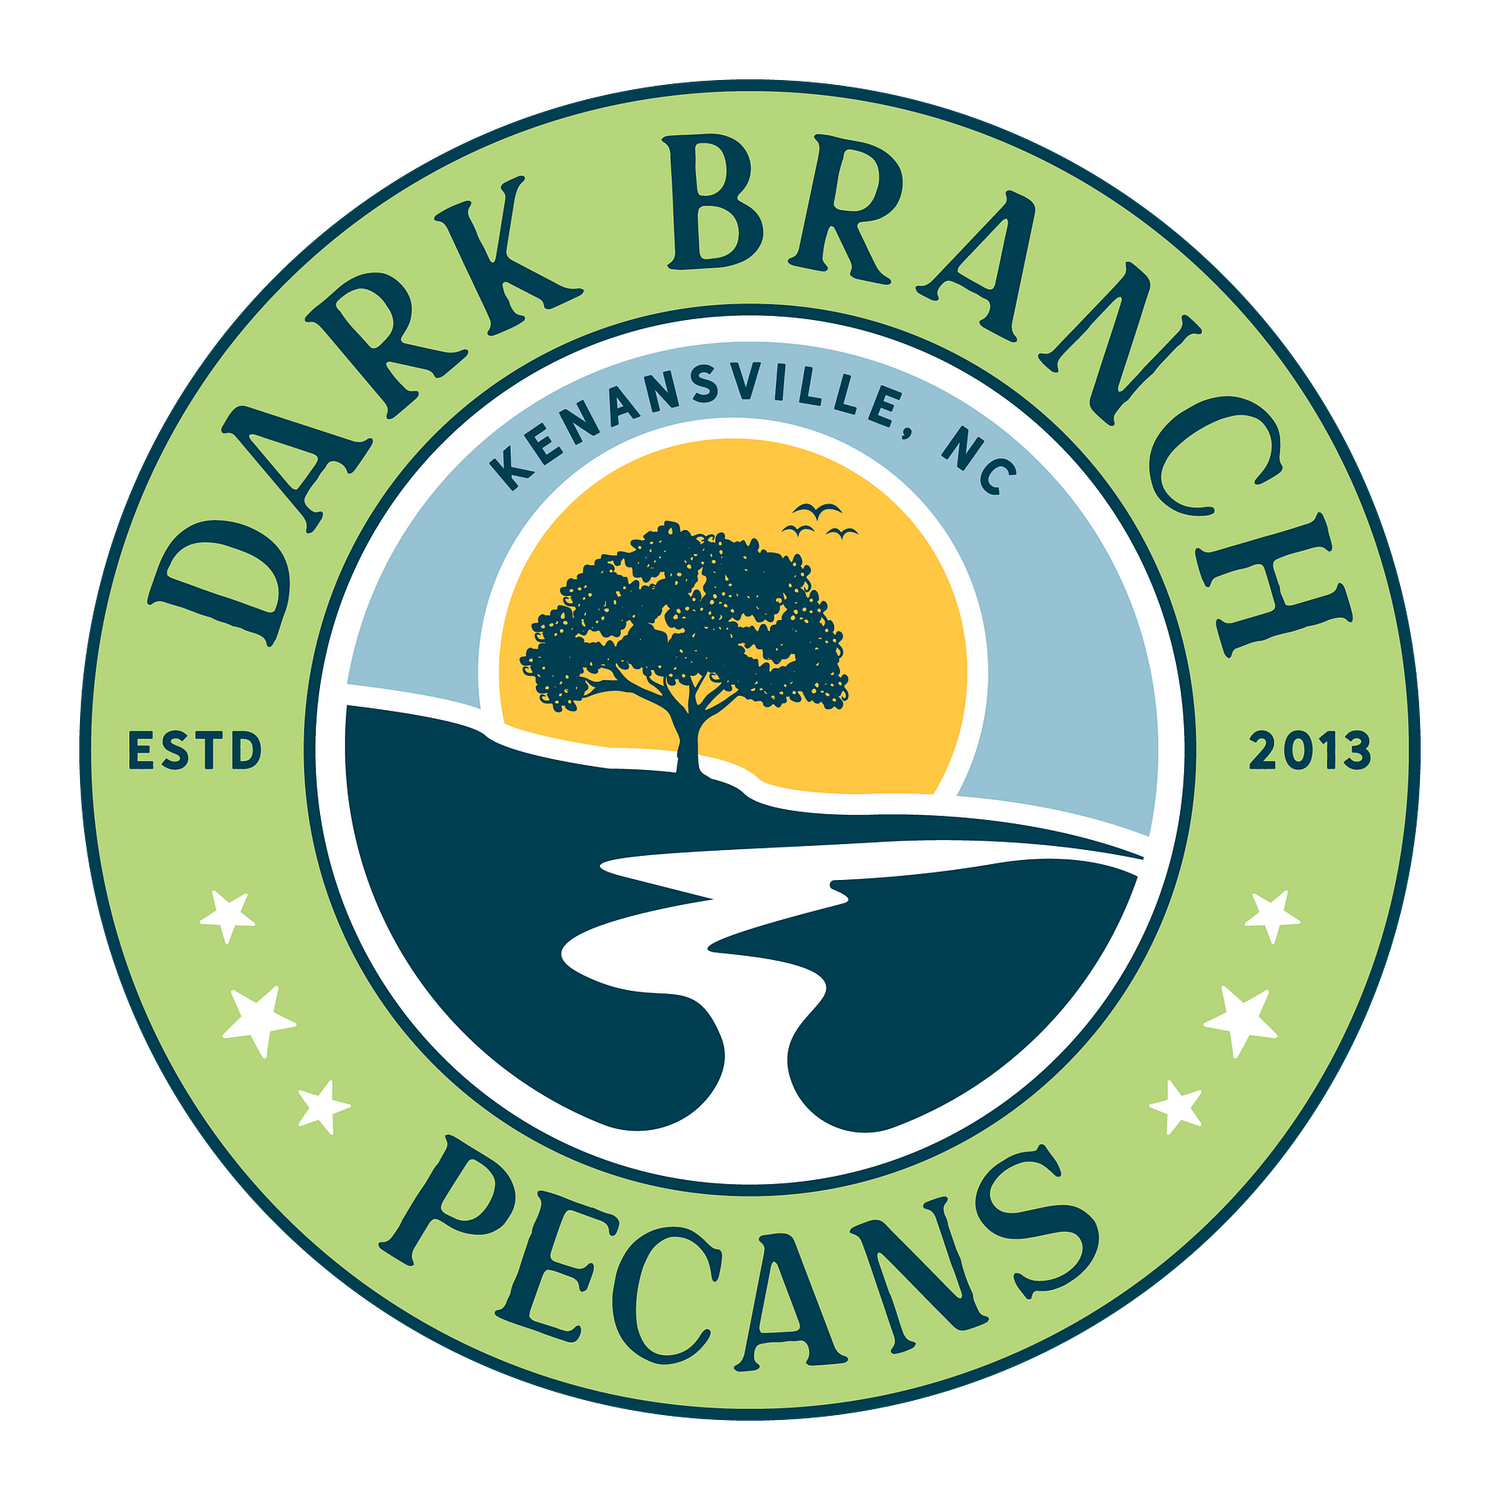 Dark Branch Pecans